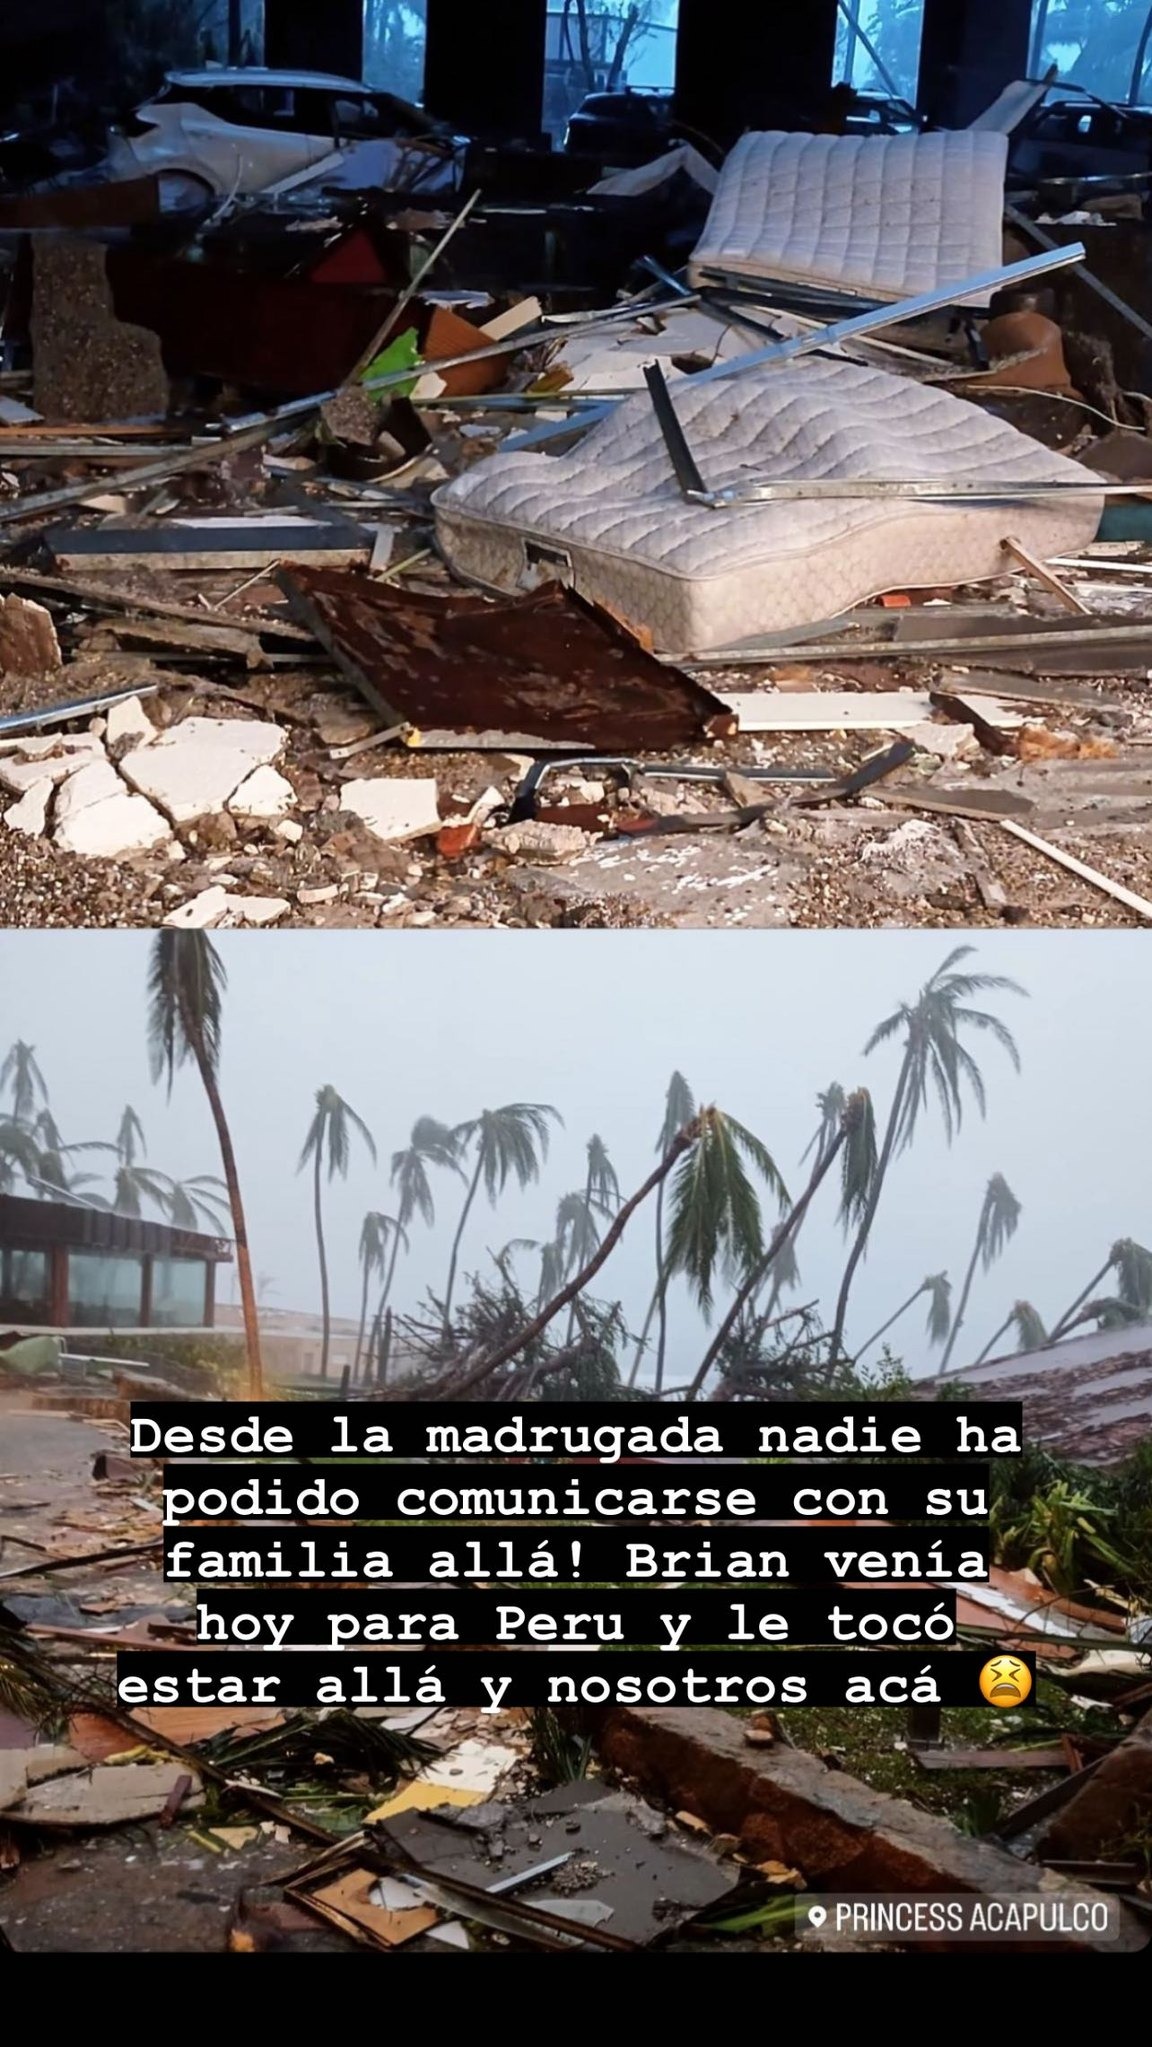 Huracán Otis devastó varios edificios en Acapulco. Foto: Instagram